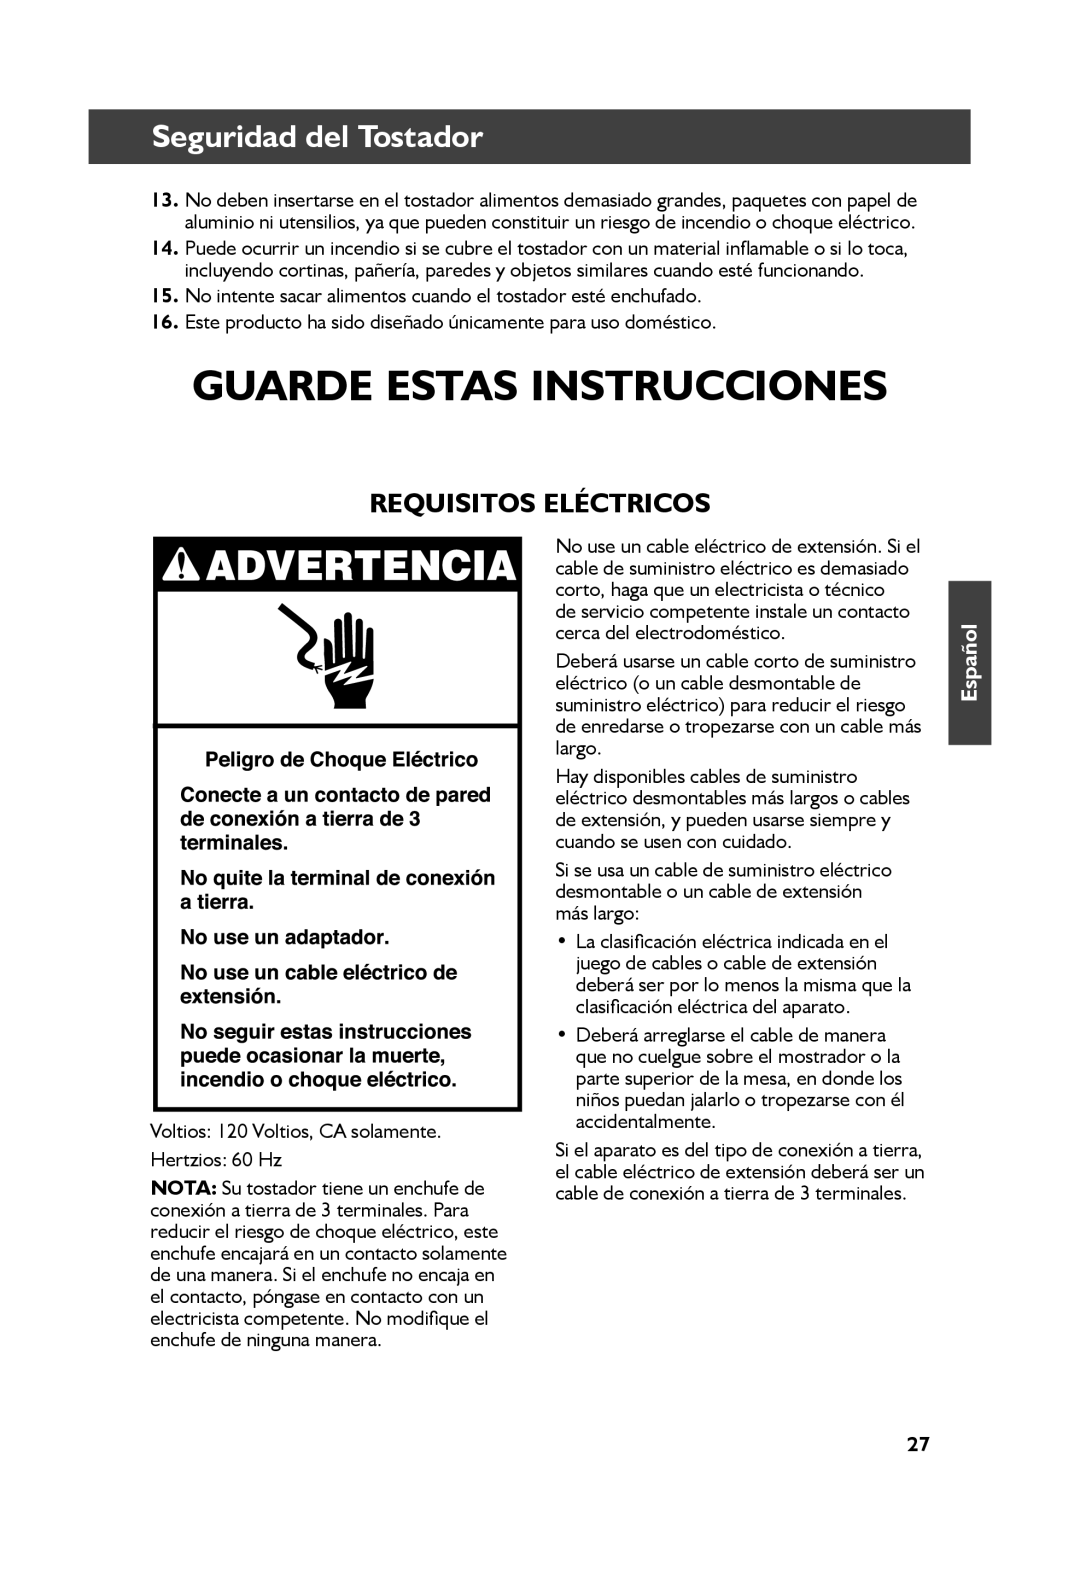 KitchenAid KMT2115, KMT4115 manual Guarde Estas Instrucciones, Requisitos Eléctricos, Seguridad del Tostador, Español 